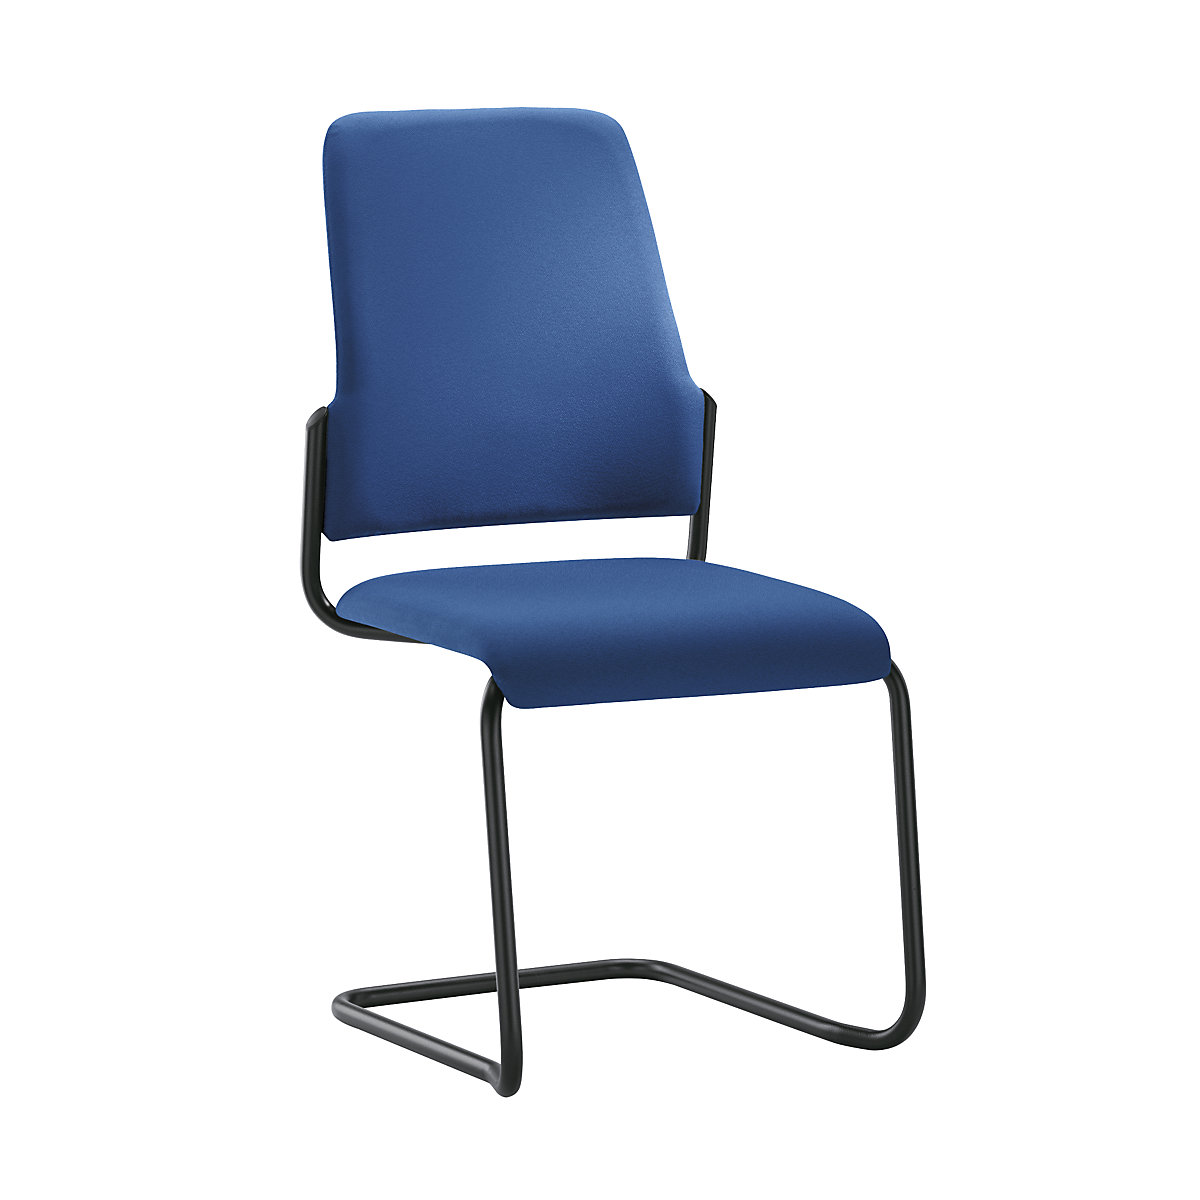 Bezoekersstoel GOAL, sledestoel, VE = 2 stuks – interstuhl, stoelframe zwart, gentiaanblauw-4